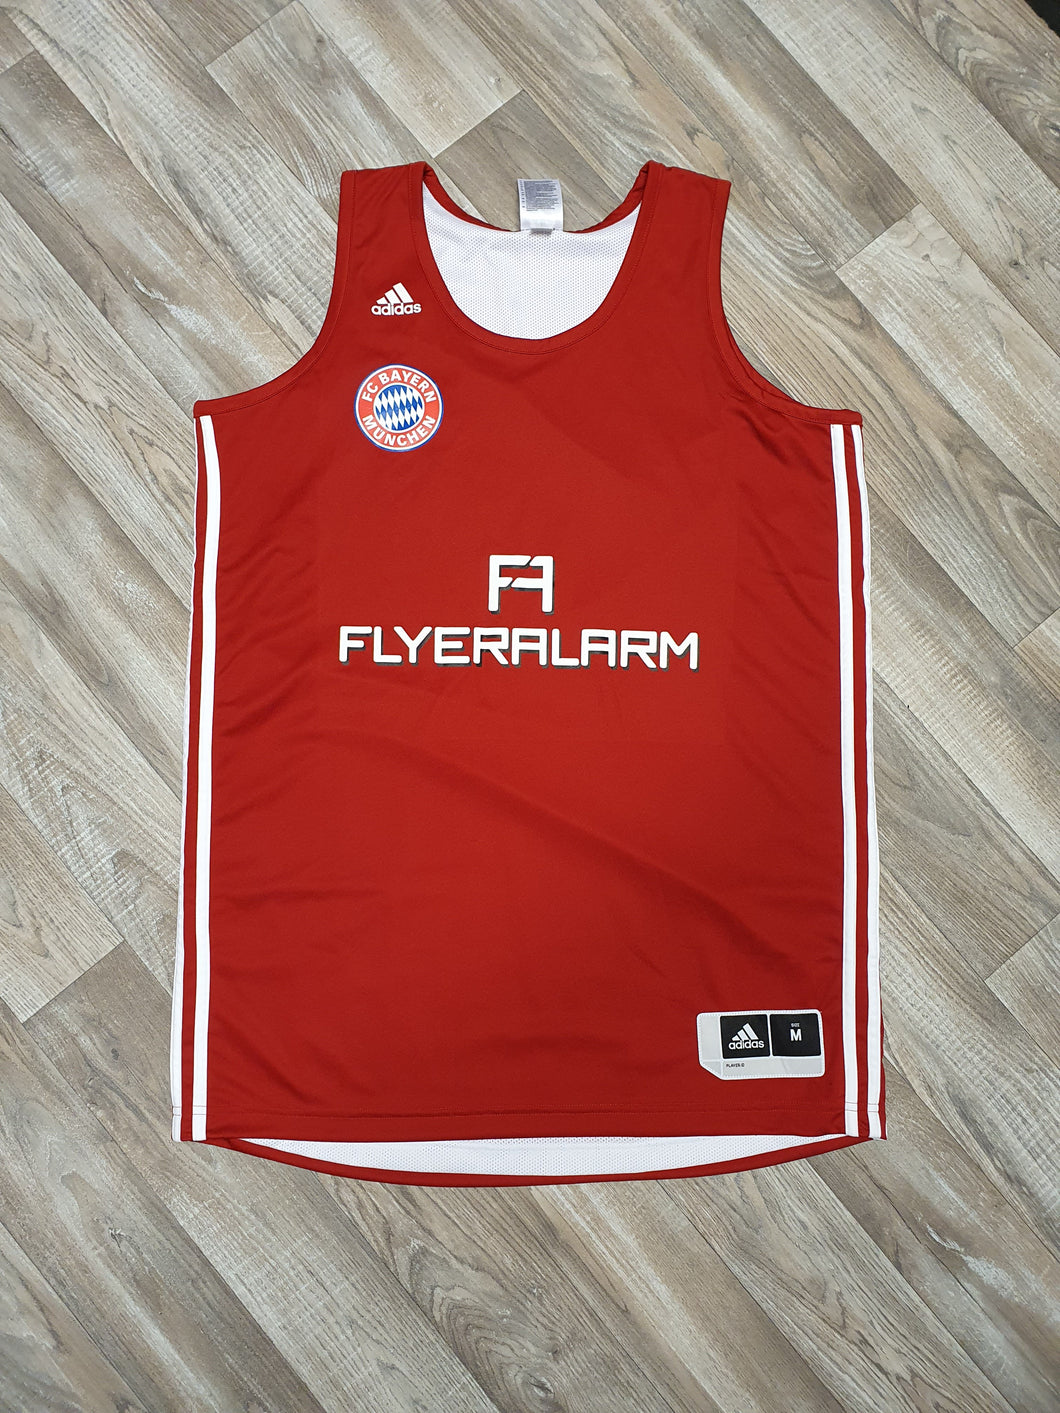 Bayern Munich Basketball Reversible Jersey Size Medium